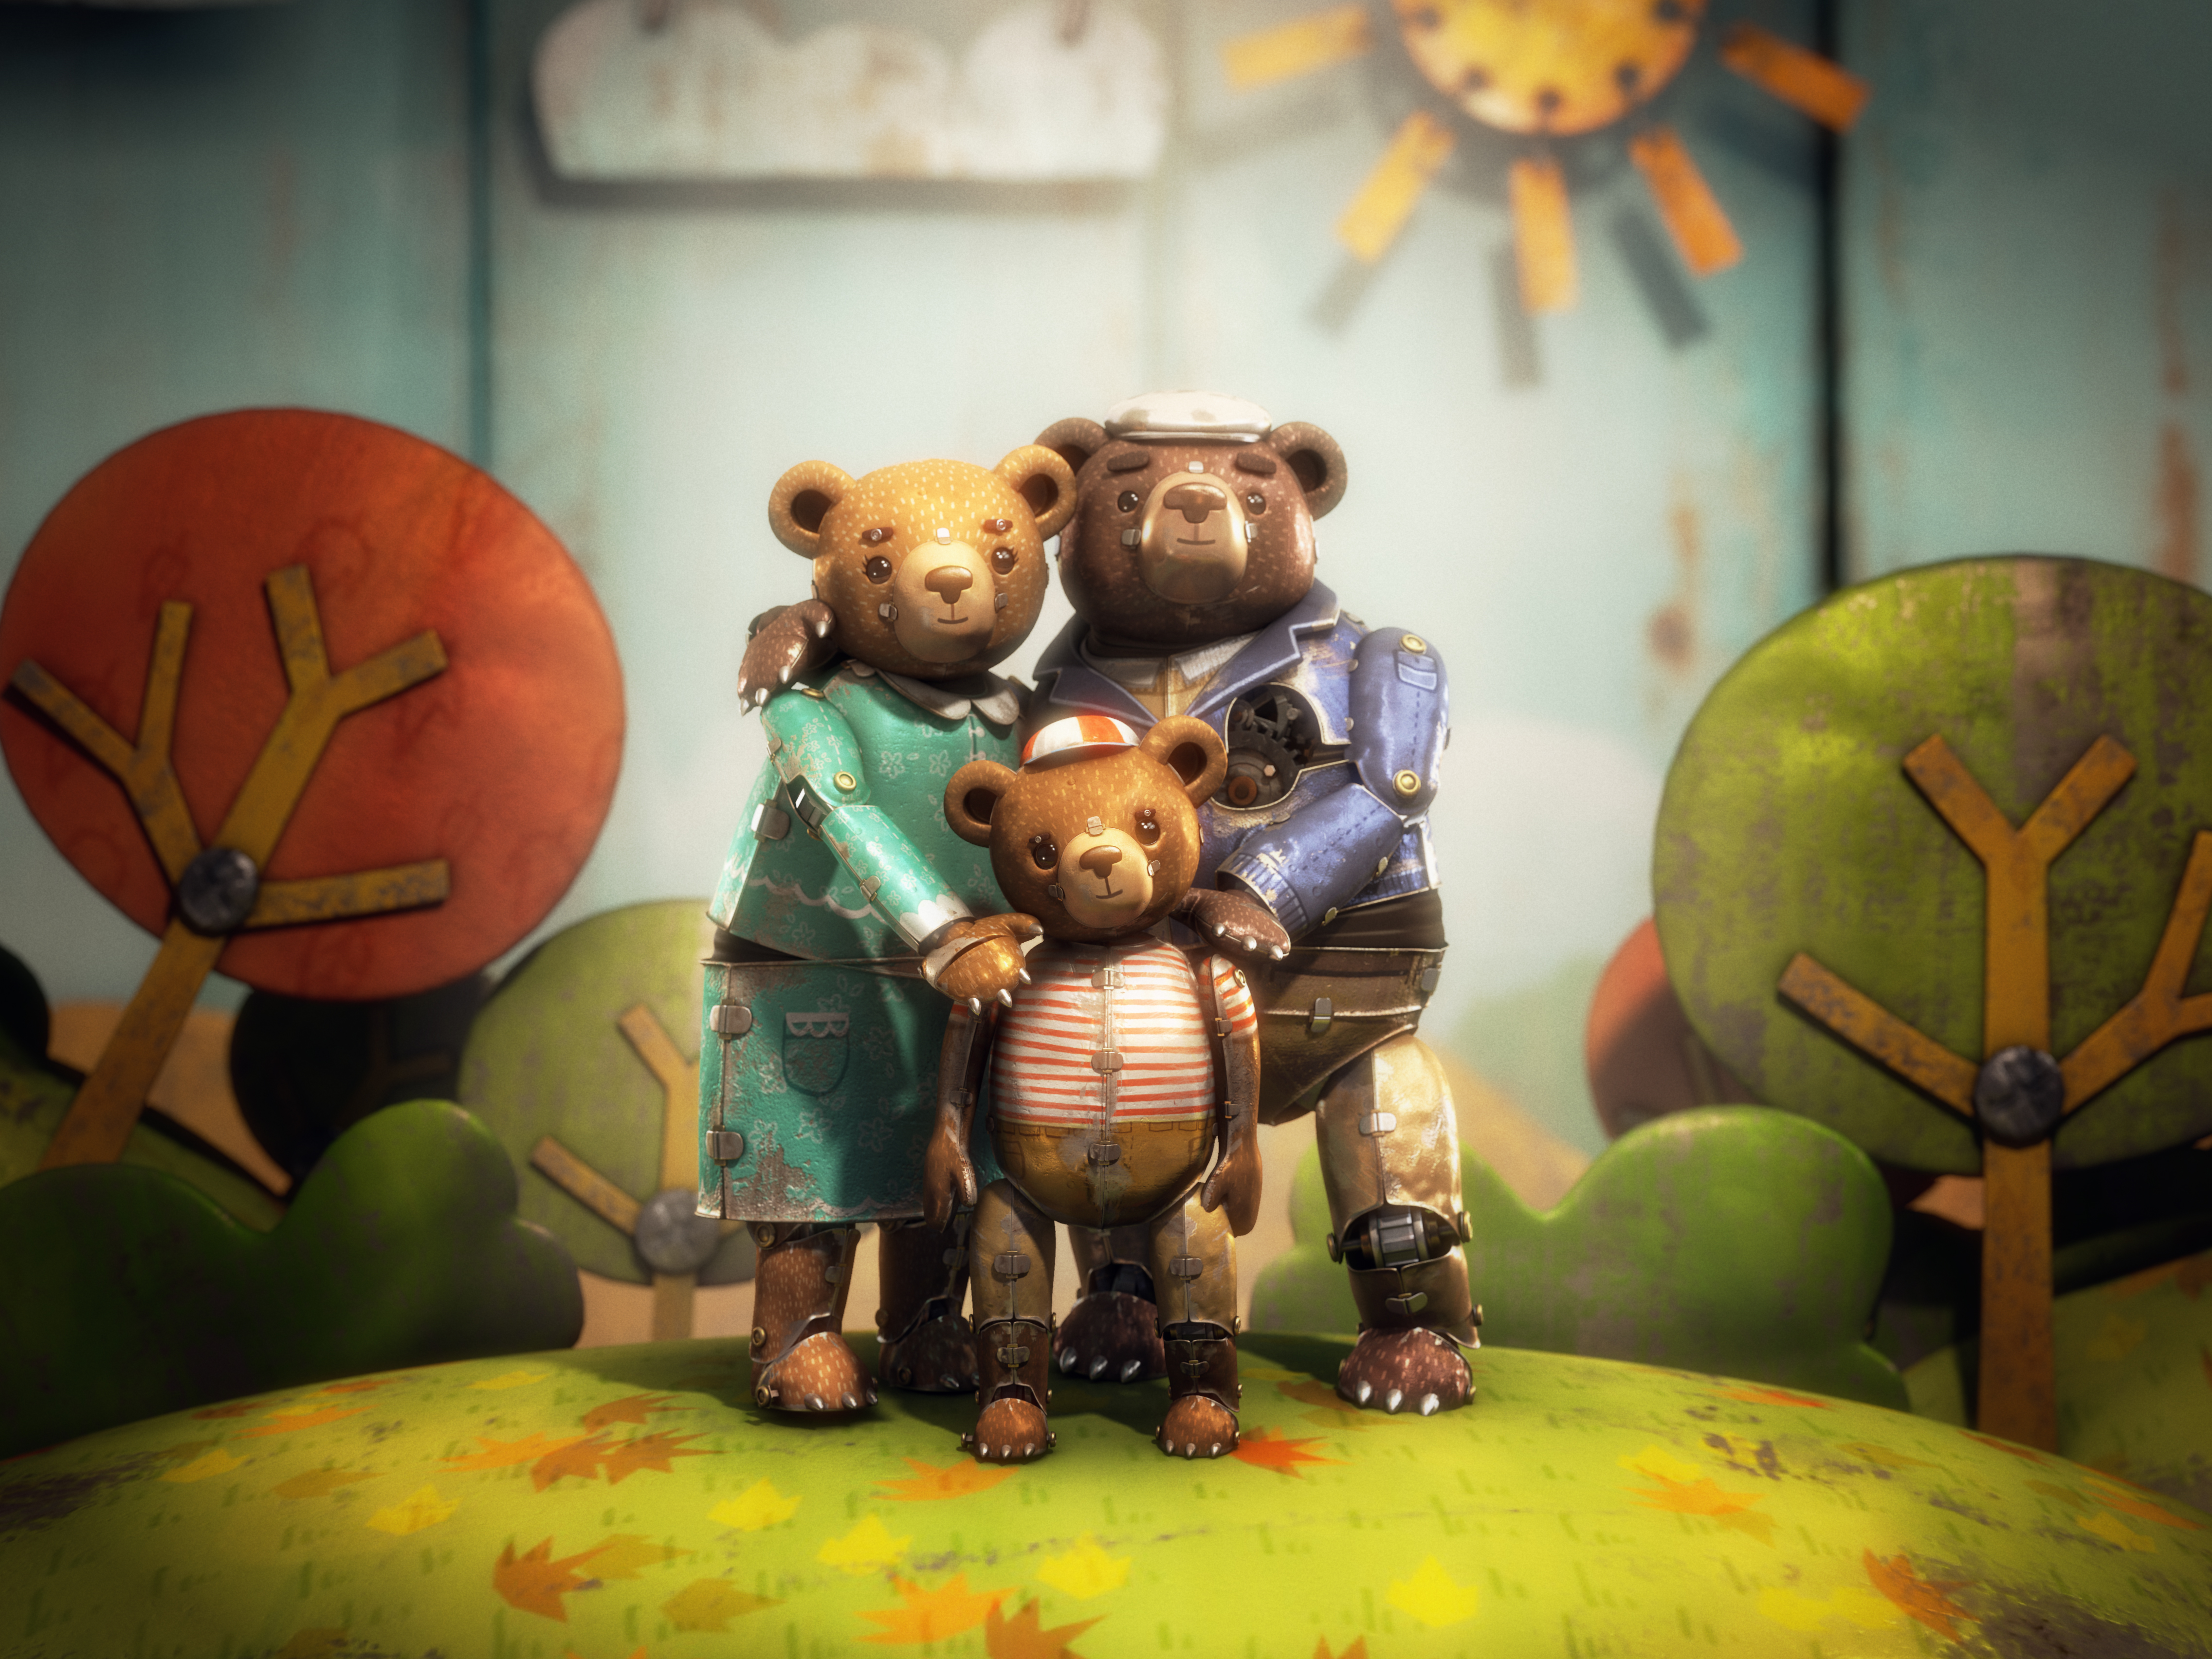 Bear Story, corto animado nominado a Óscar